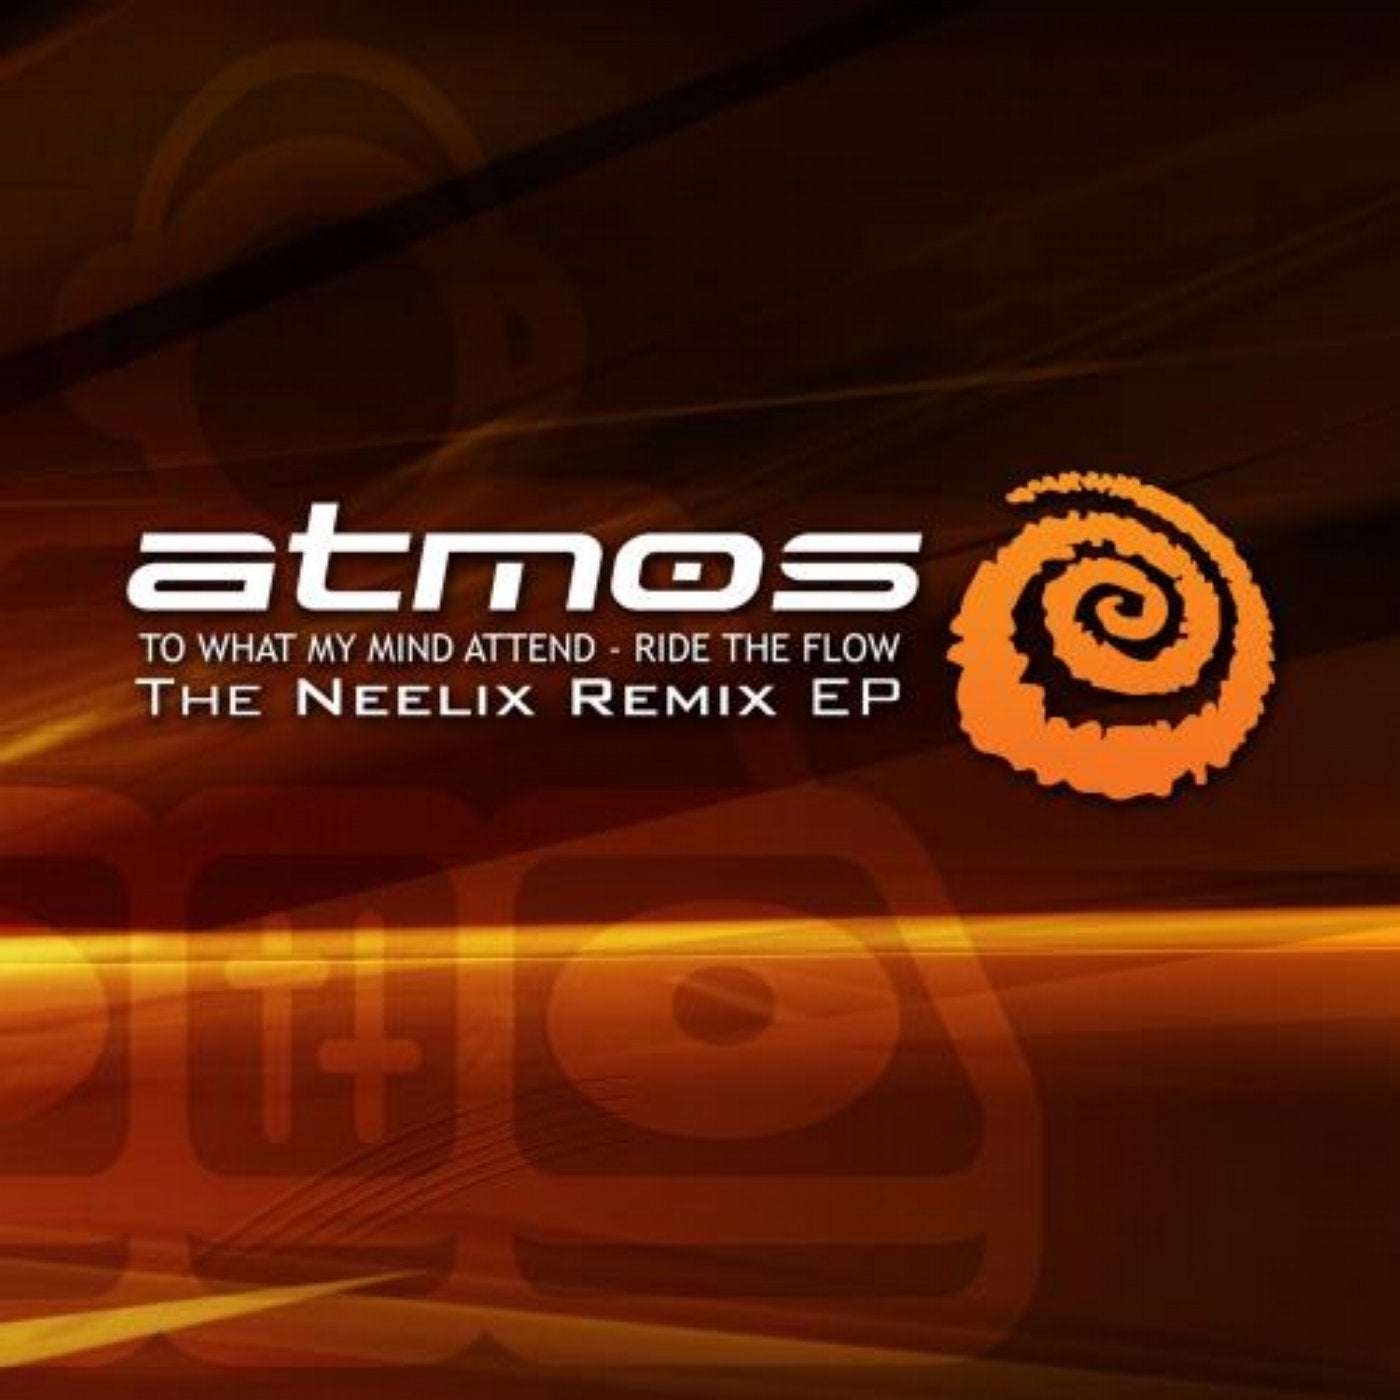 The Neelix Remix EP